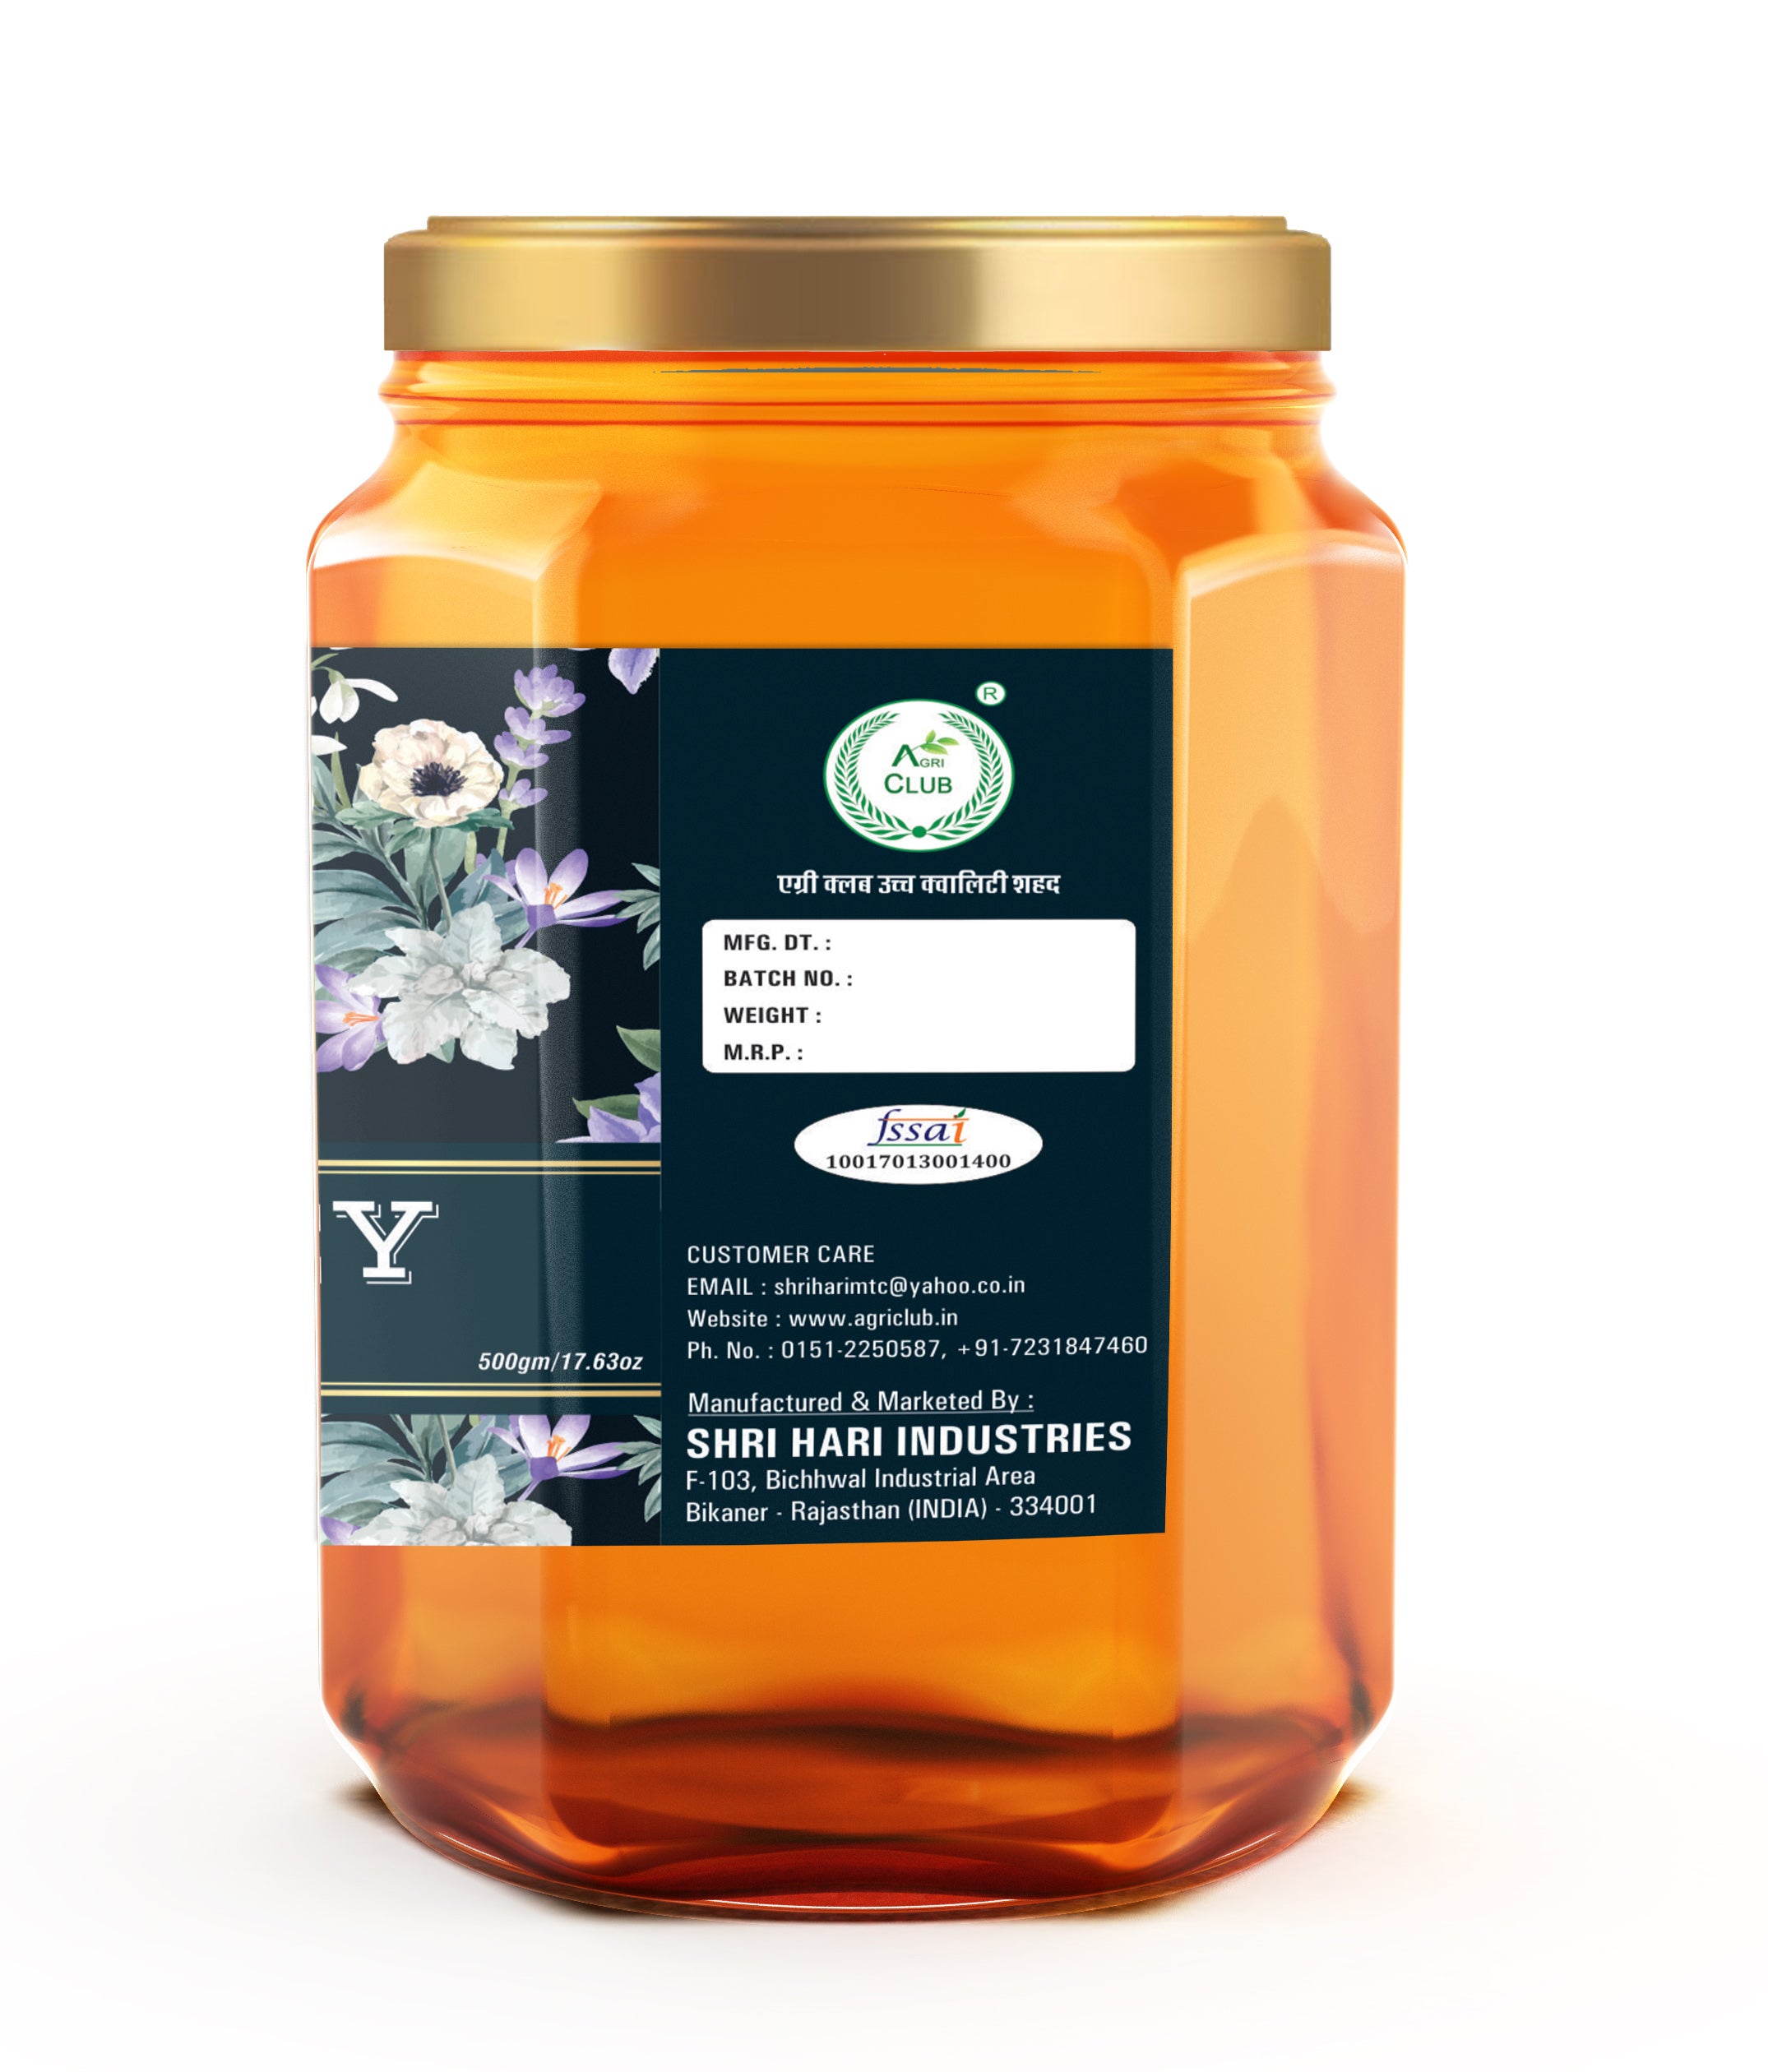 Saffron Honey 100% Pure 500 gm